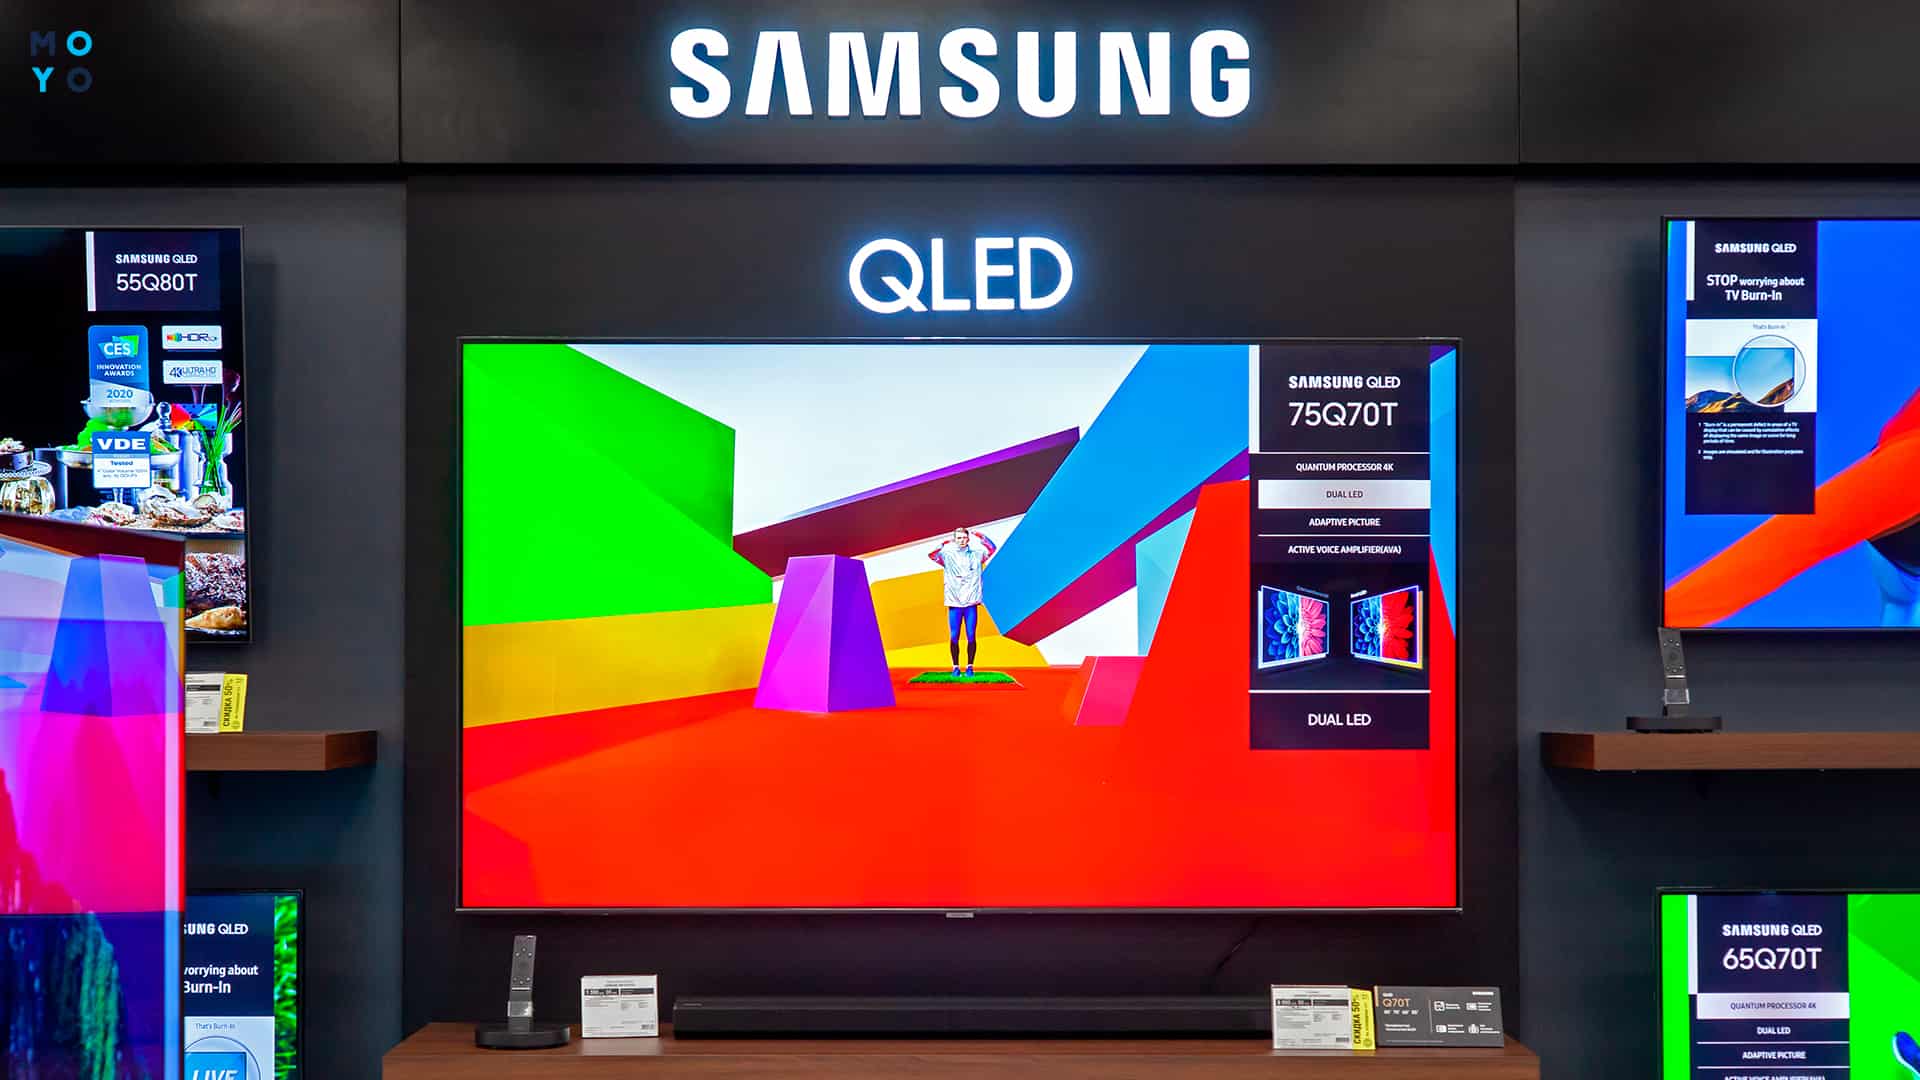  якість картинки телевізорів Samsung та LG